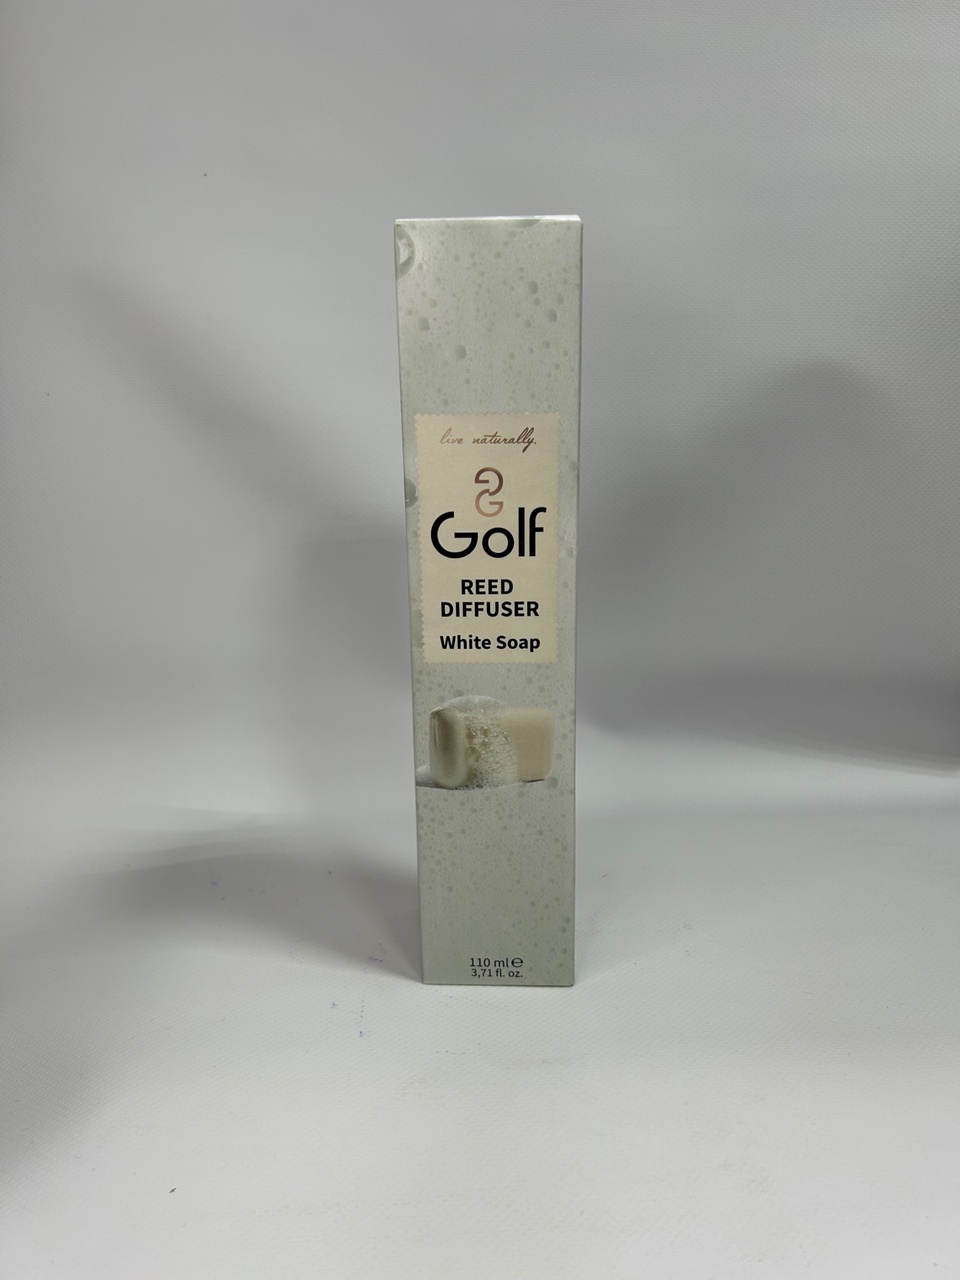 Ароматический диффузор Golf “Белое мыло”, 110ml - 550 ₽, заказать онлайн.